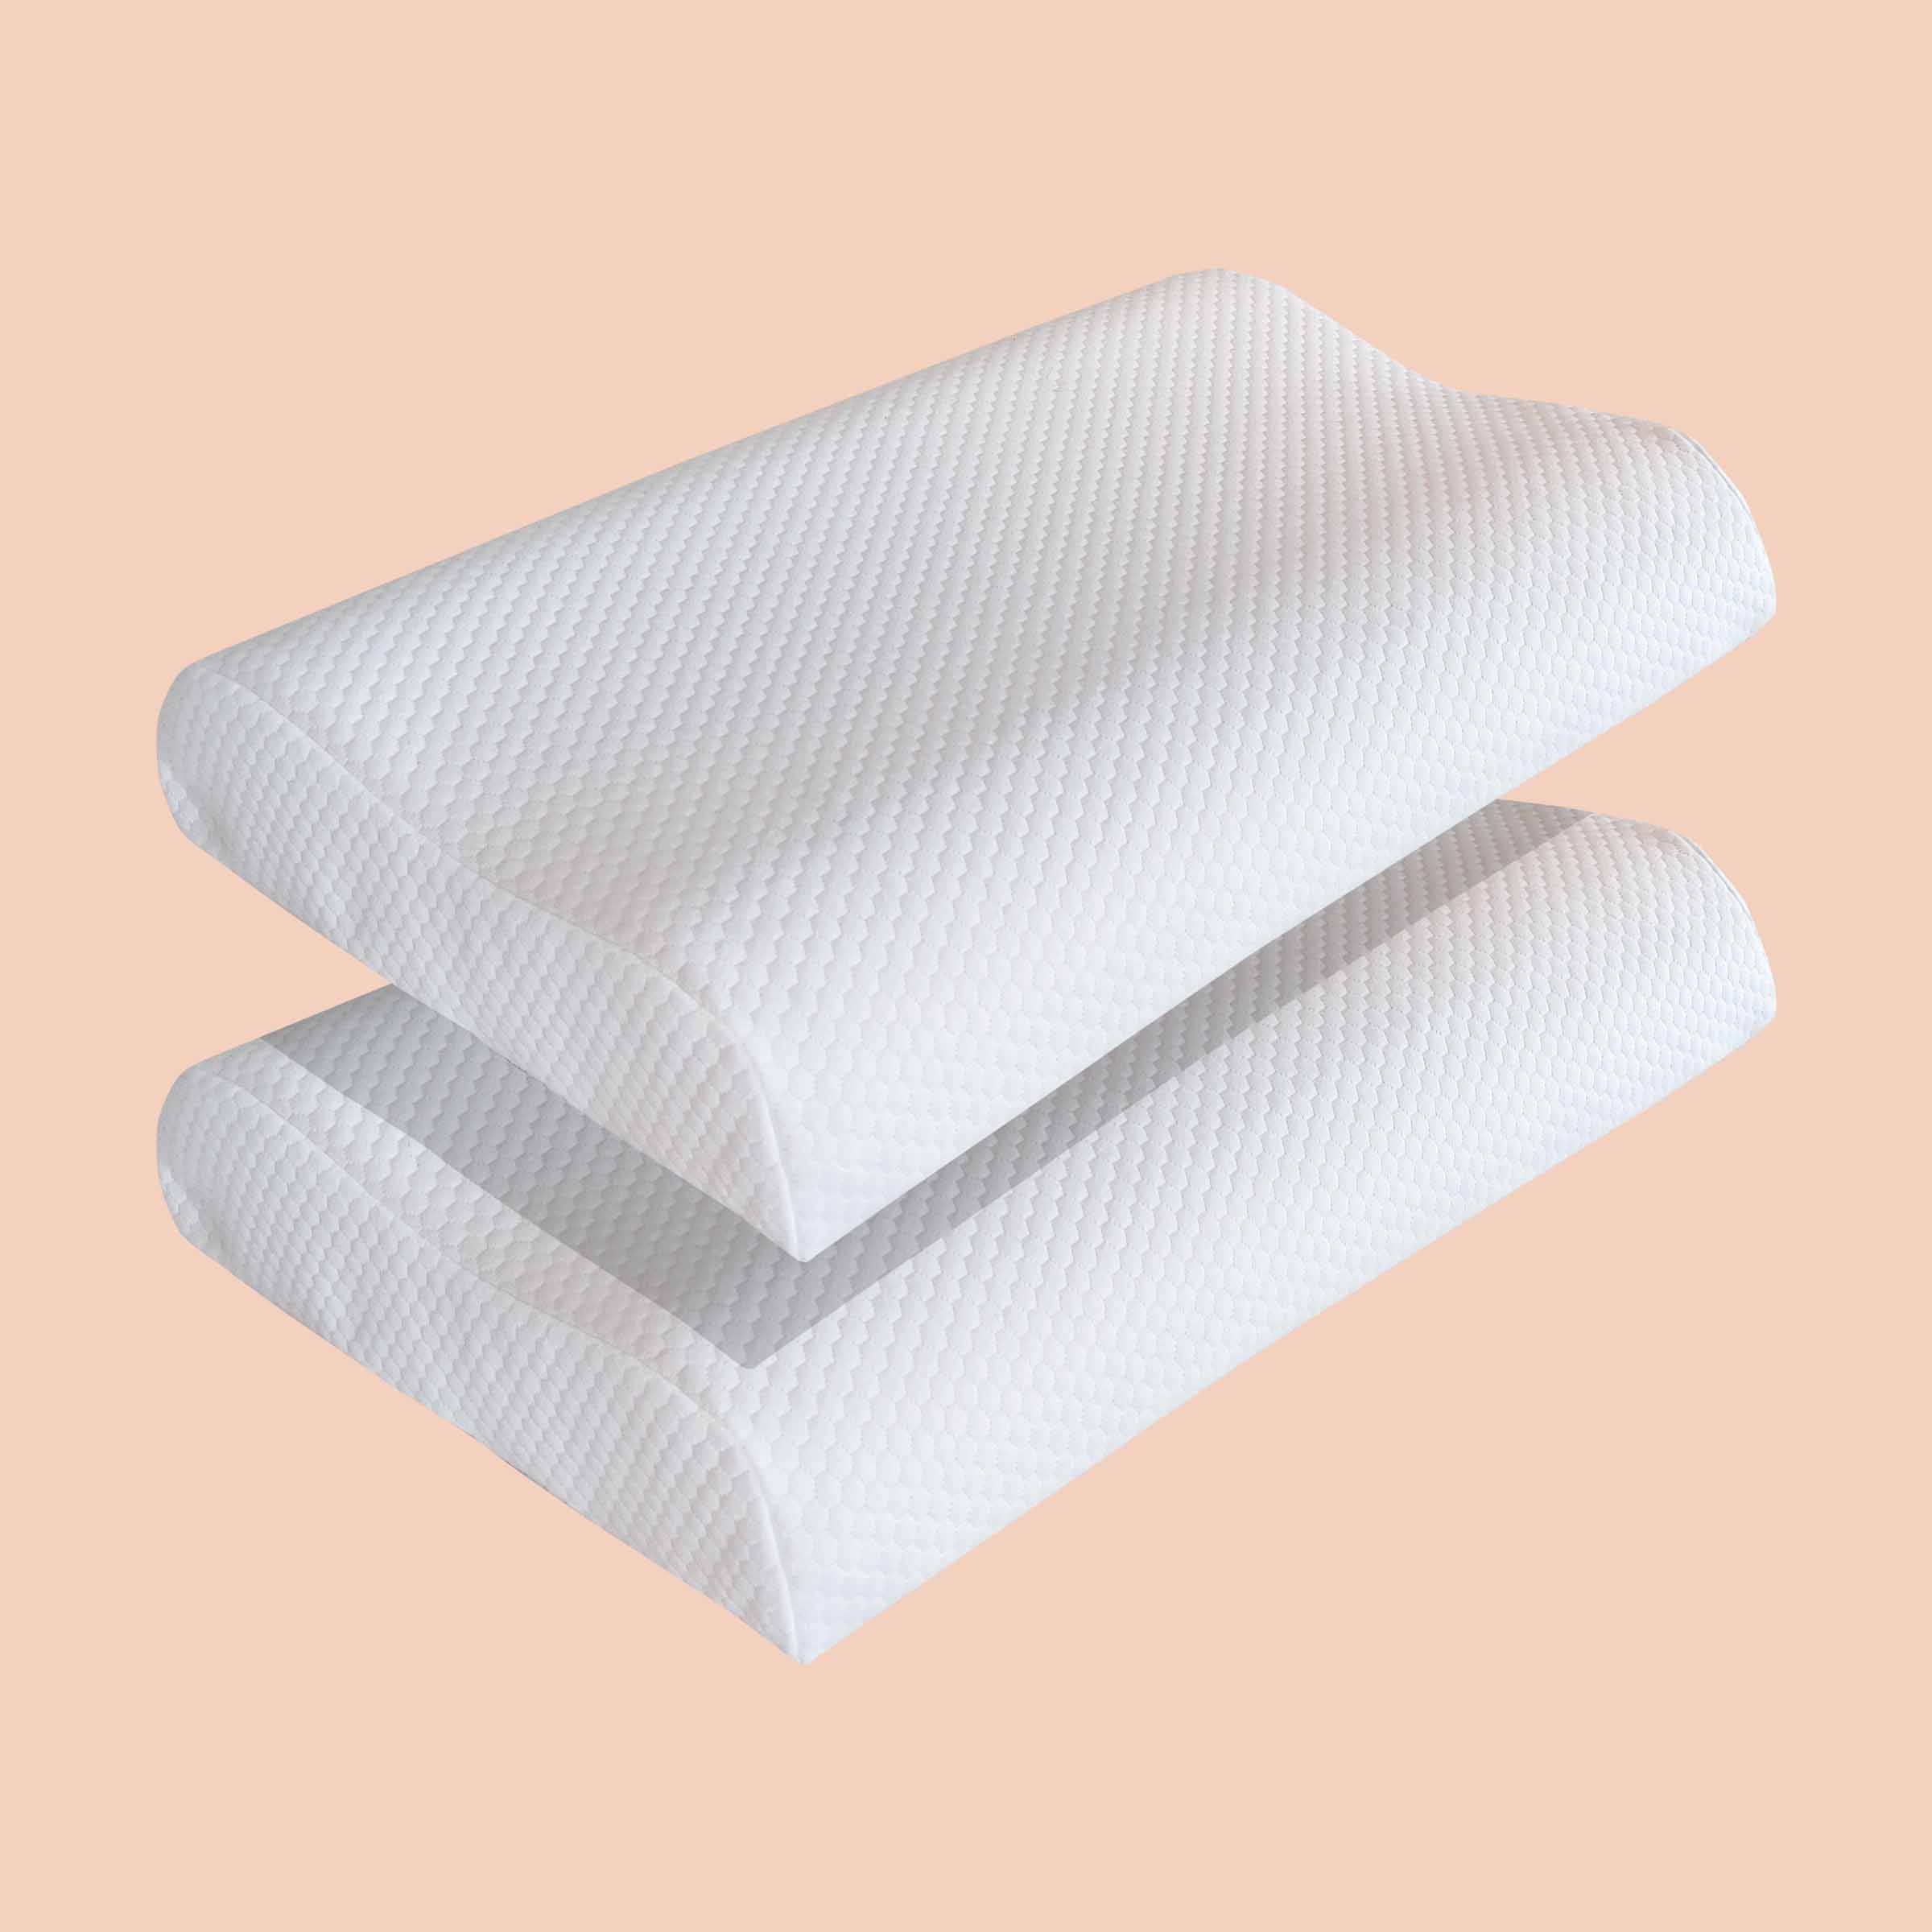 Due cuscini cervicali Fiordilattice di Beliamo in un bundle, progettati per il massimo supporto del collo e comfort